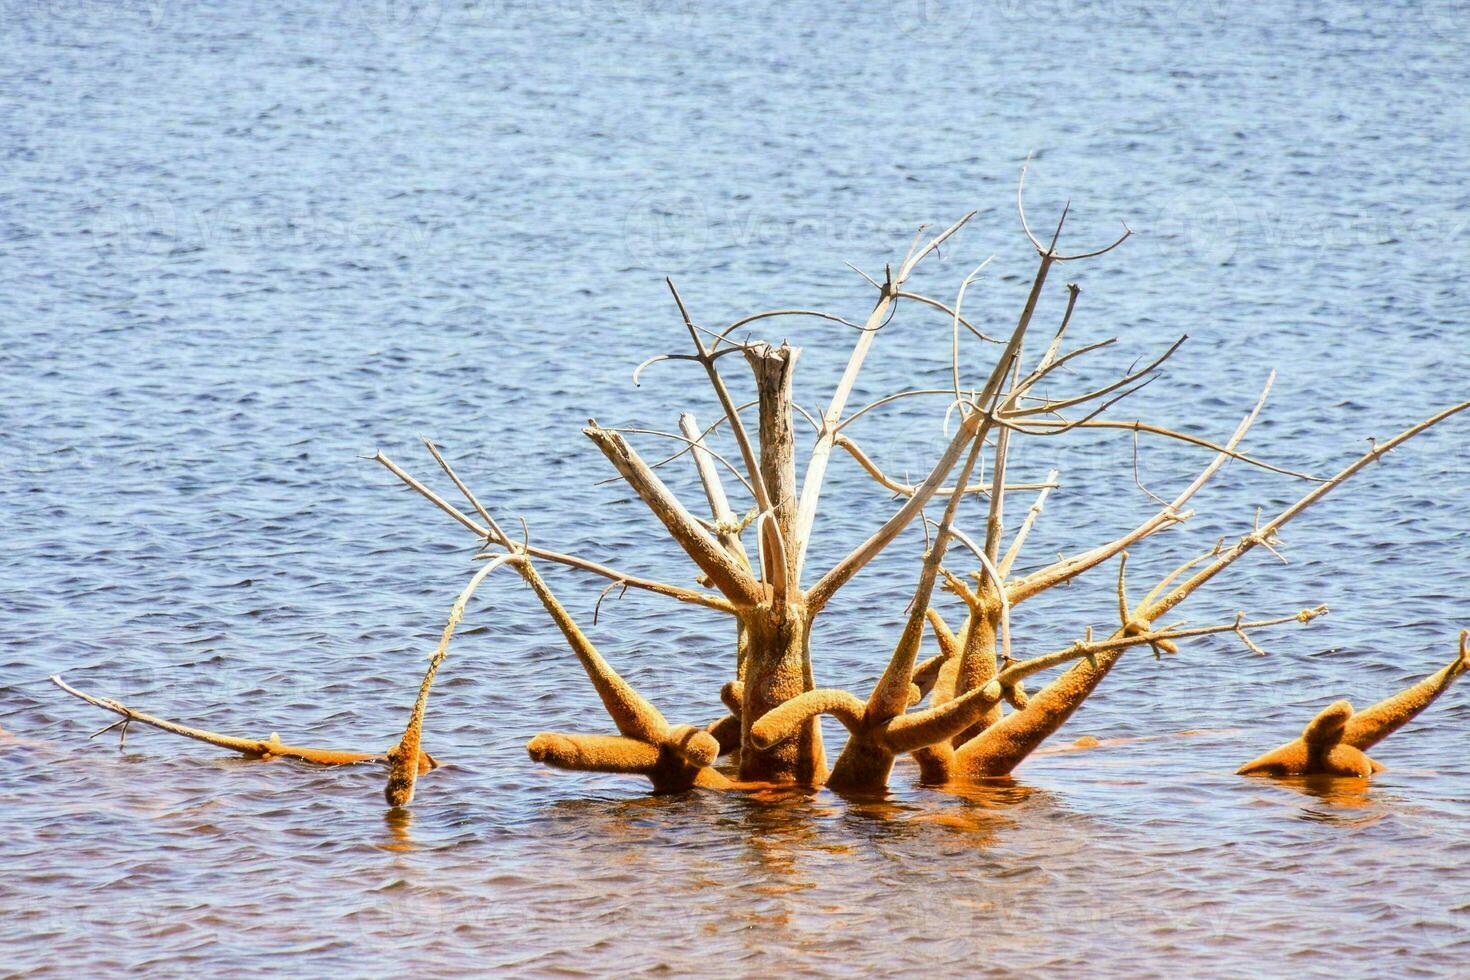 árbol muerto en el agua foto